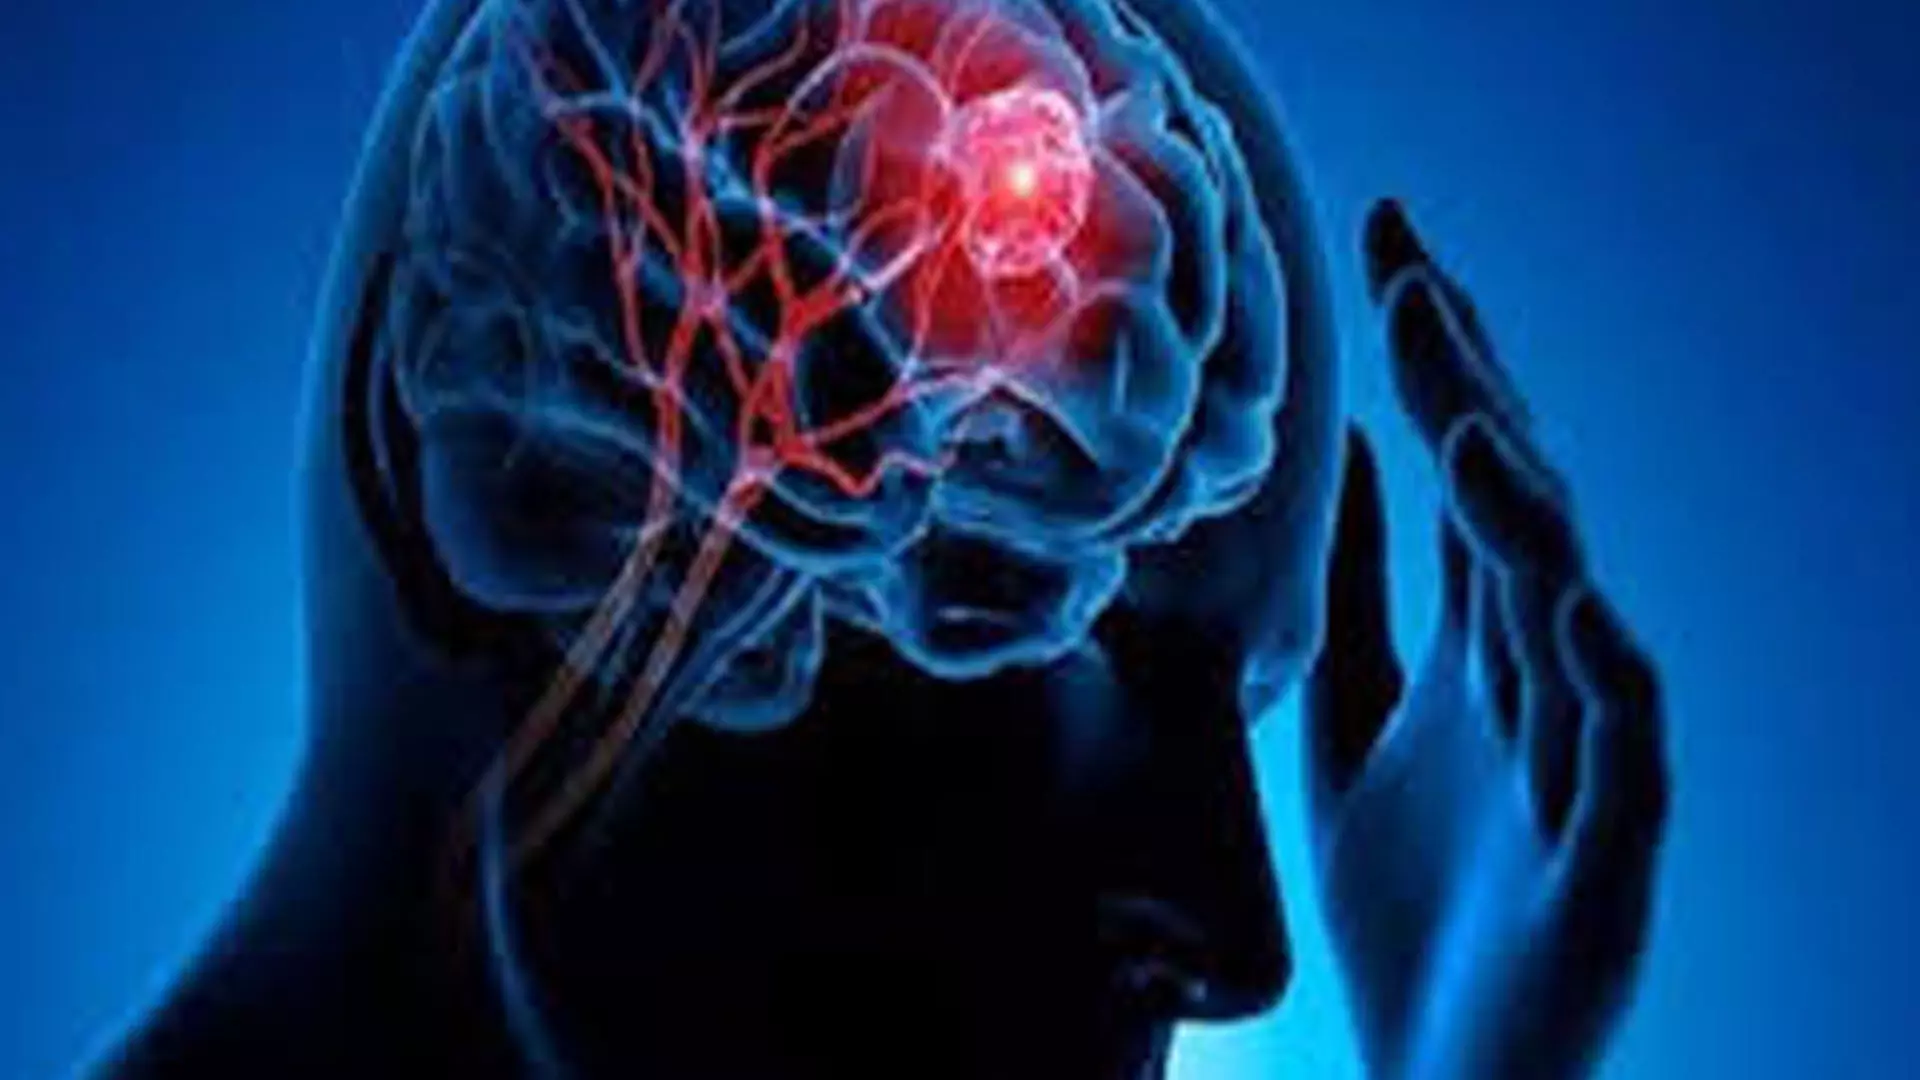 30 वर्षीय व्यक्ति के मस्तिष्क दिमाग से निकाला गया क्रिकेट बॉल साइज का ट्यूमर